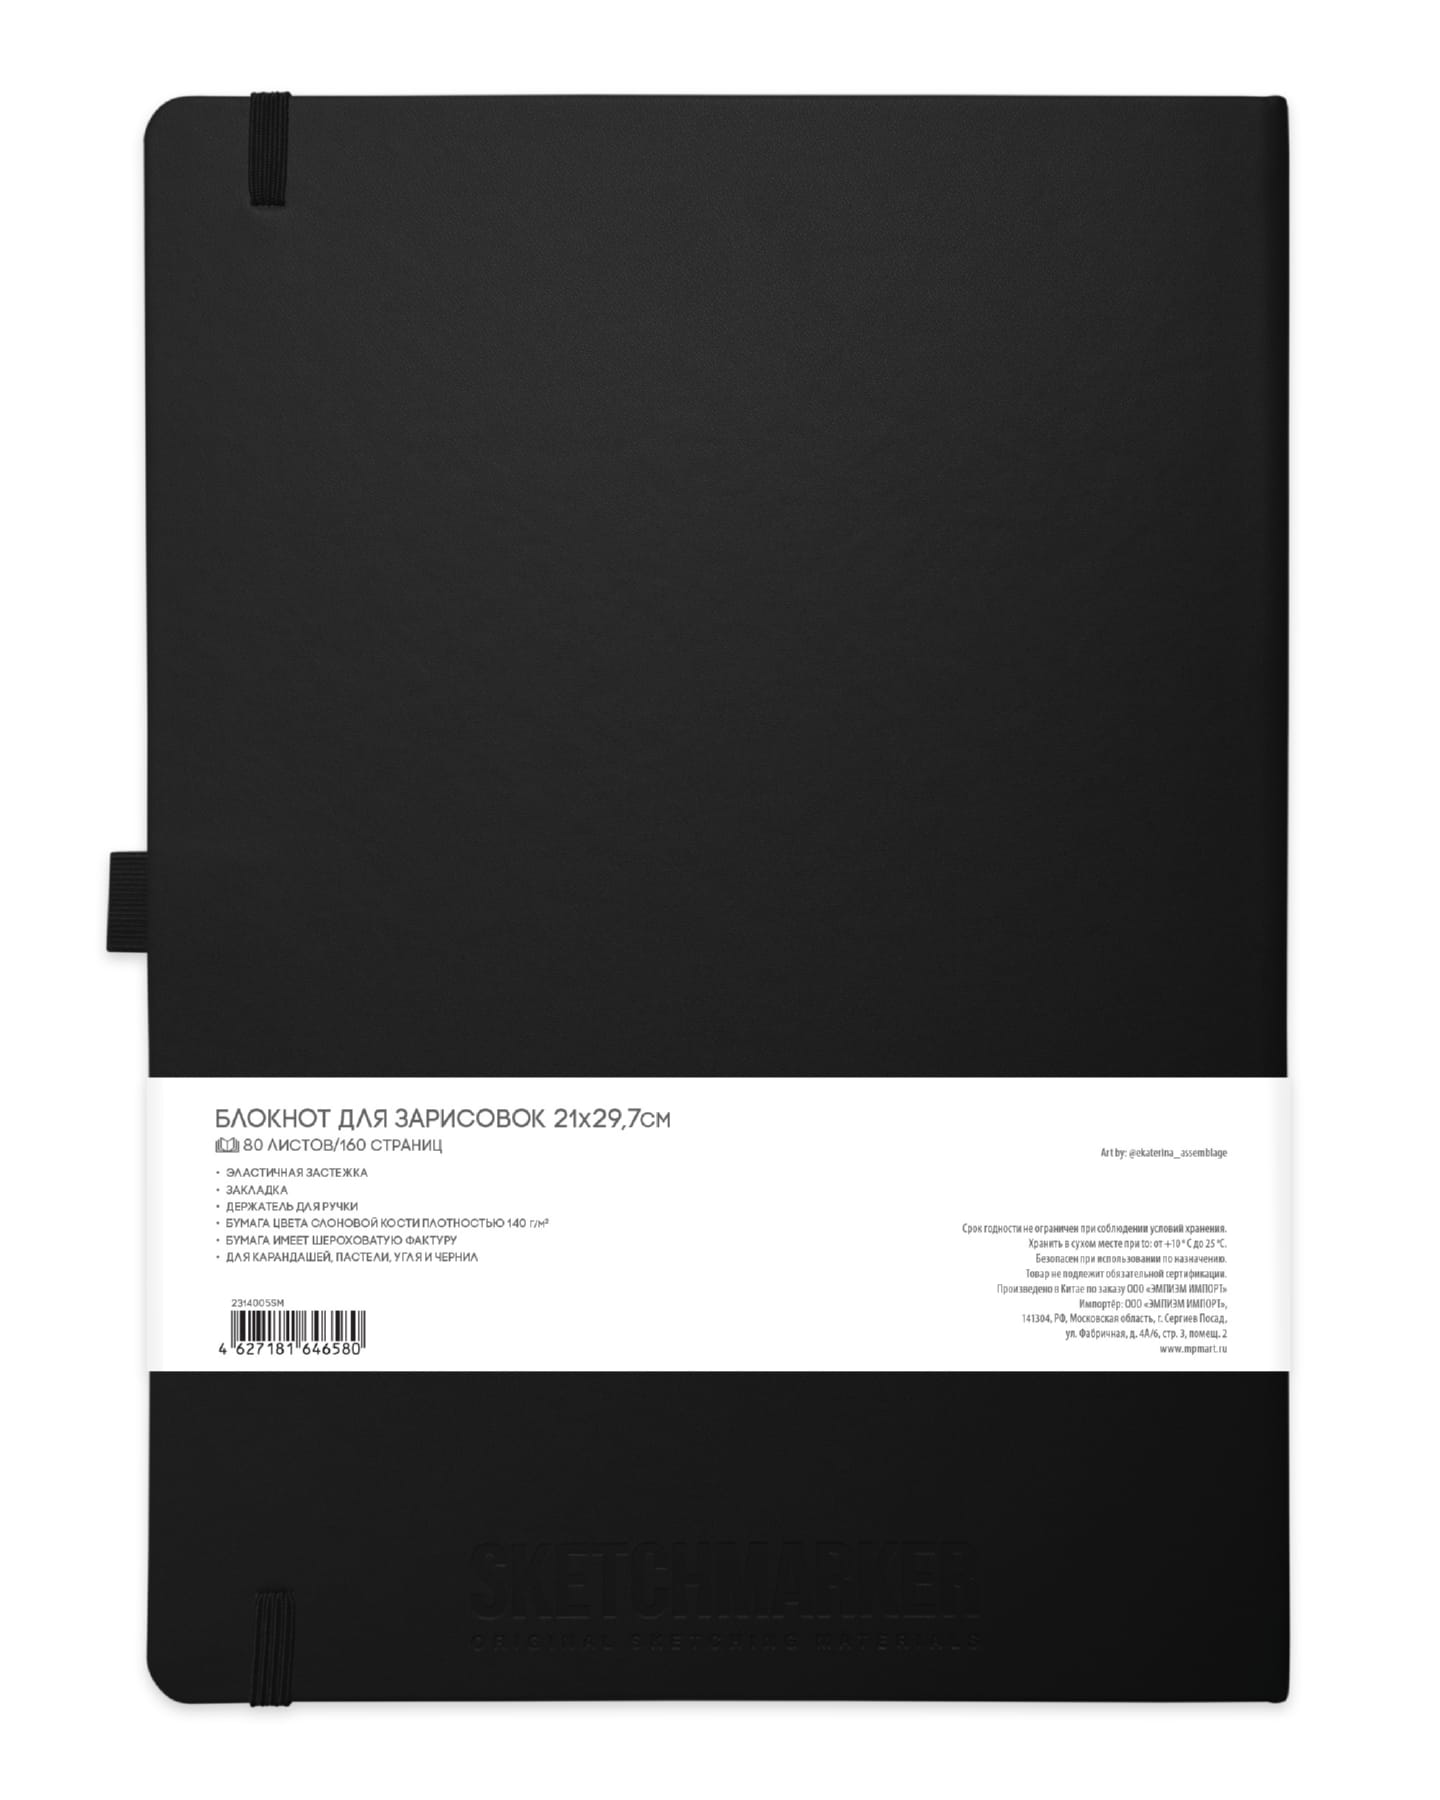 Блокнот для зарисовок Sketchmarker 140г/кв.м 21*29.7см 80л твердая обложка Черный